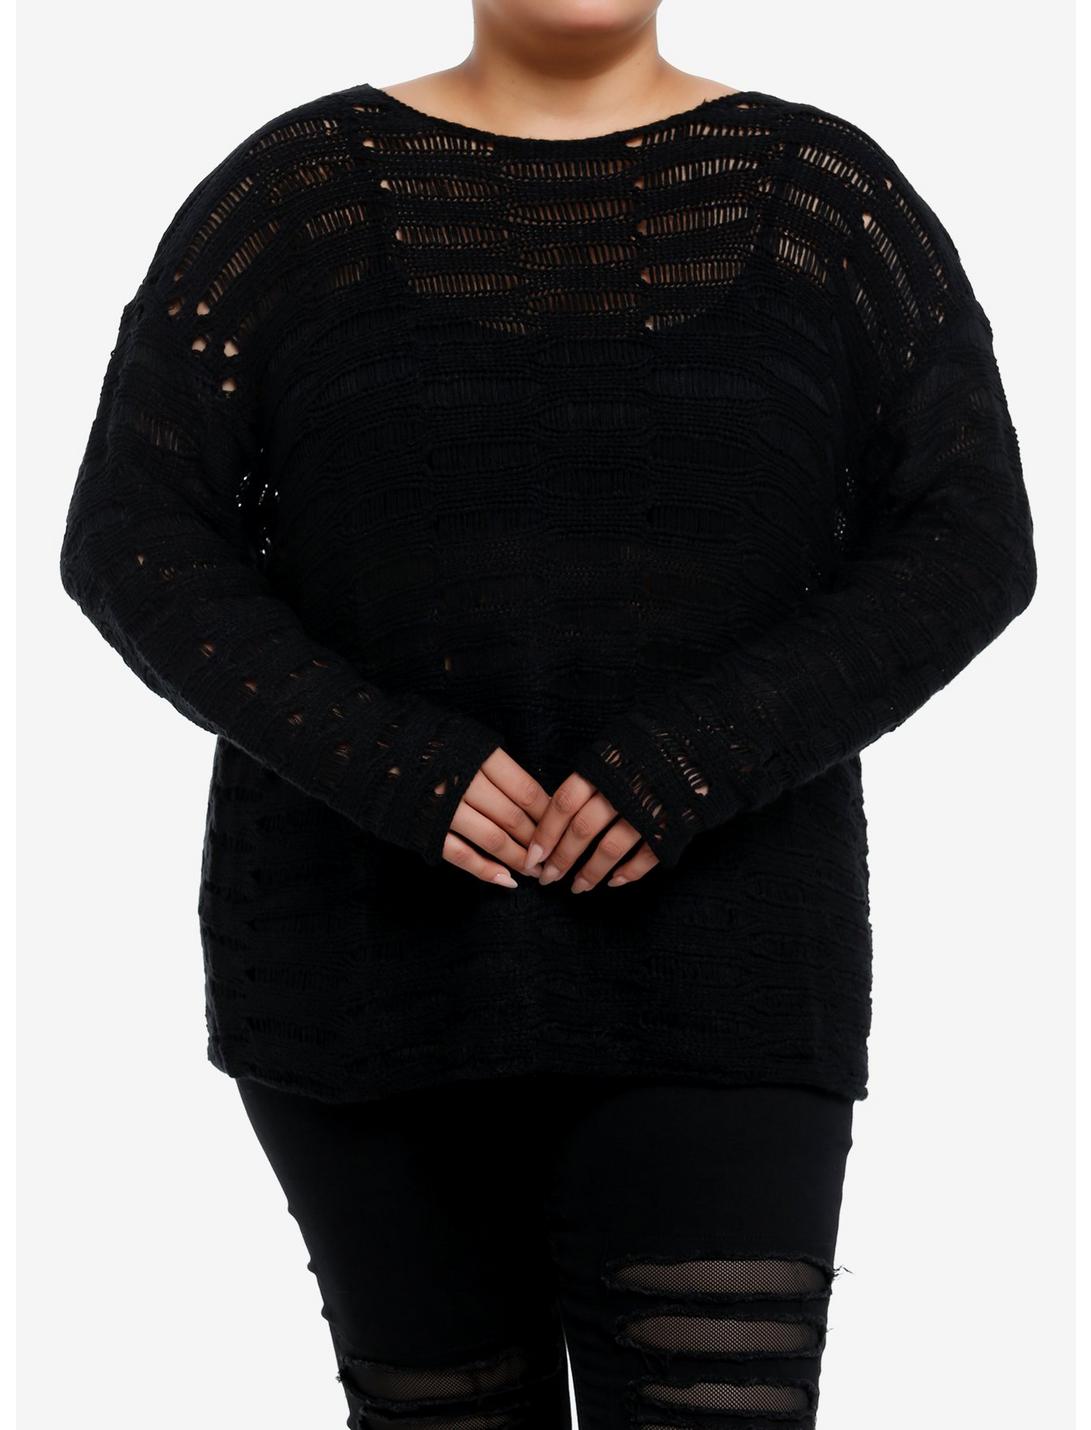 Social Collision Black Destructed Boyfriend Fit Girls Sweater Plus Size, BLACK, hi-res